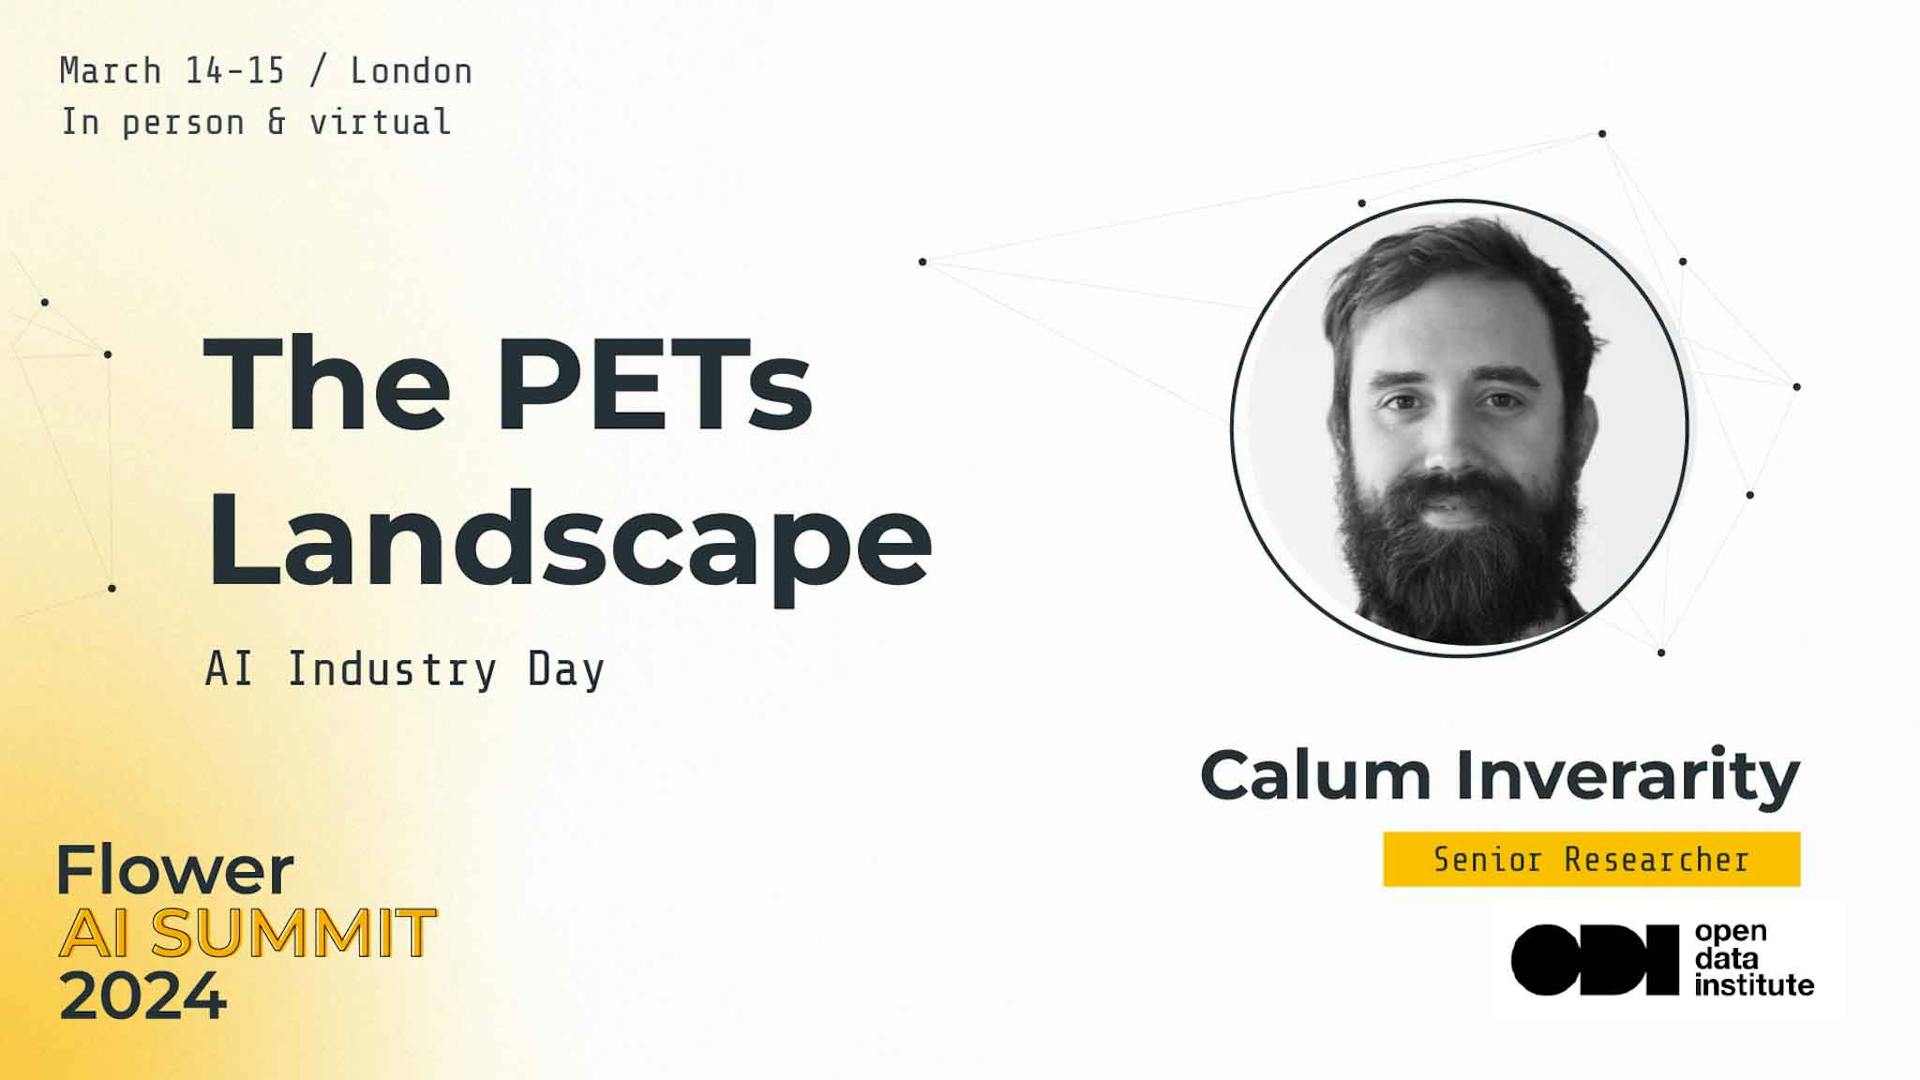 The PETs Landscape, by Calum Inverarity